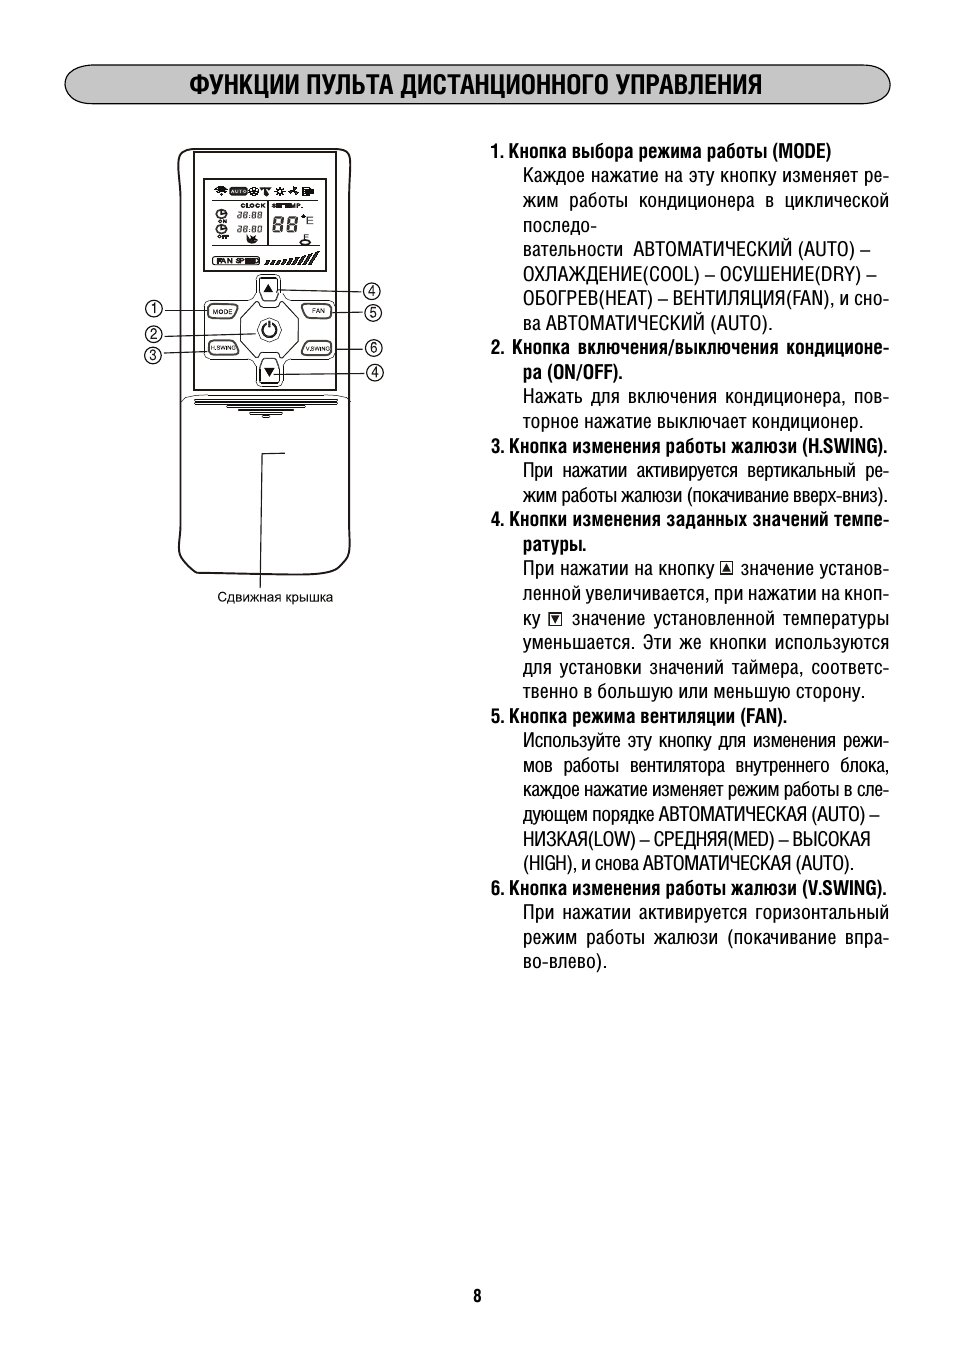 Инструкции к пульту эксплуатации и расшифровка кнопок для кондиционеров midea (мидеа, мидея)